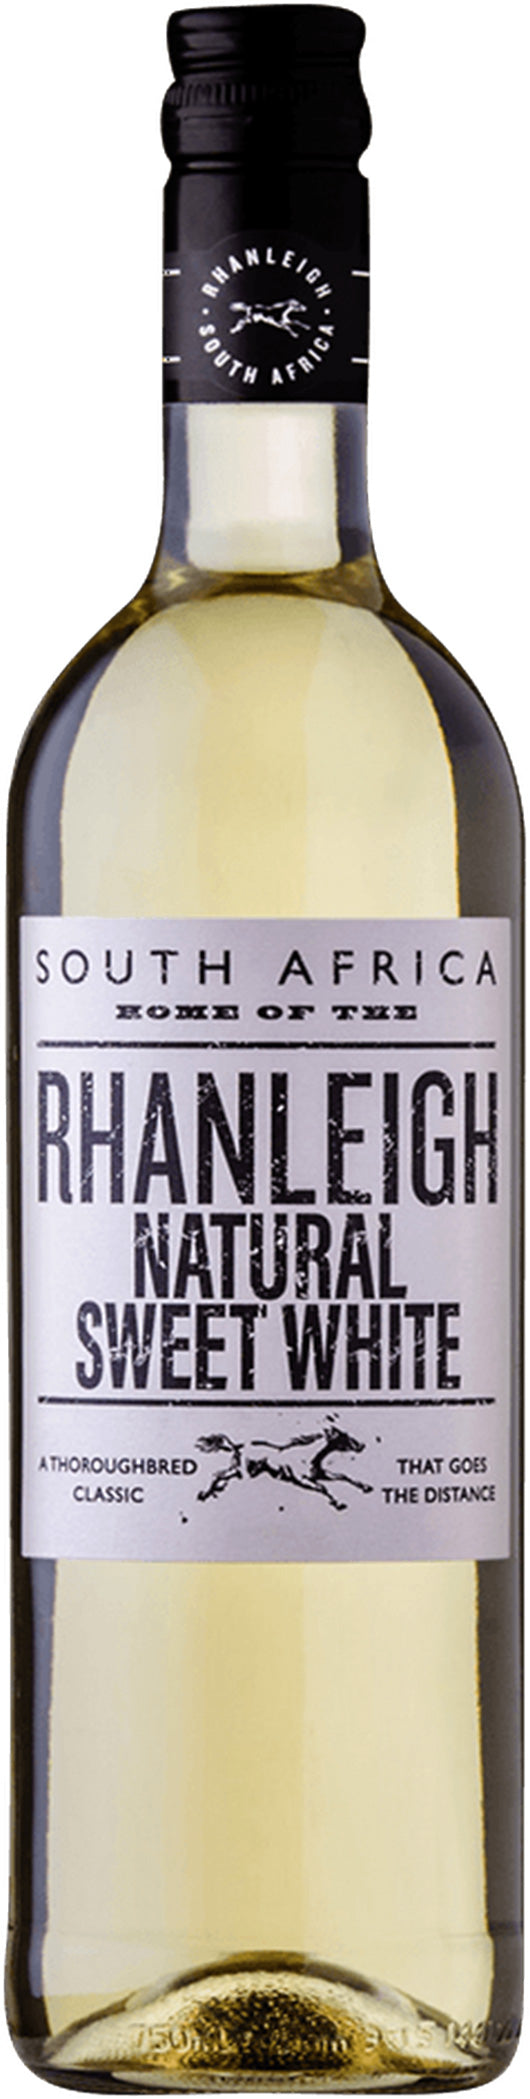 Rhanleigh Natural Sweet White 2020